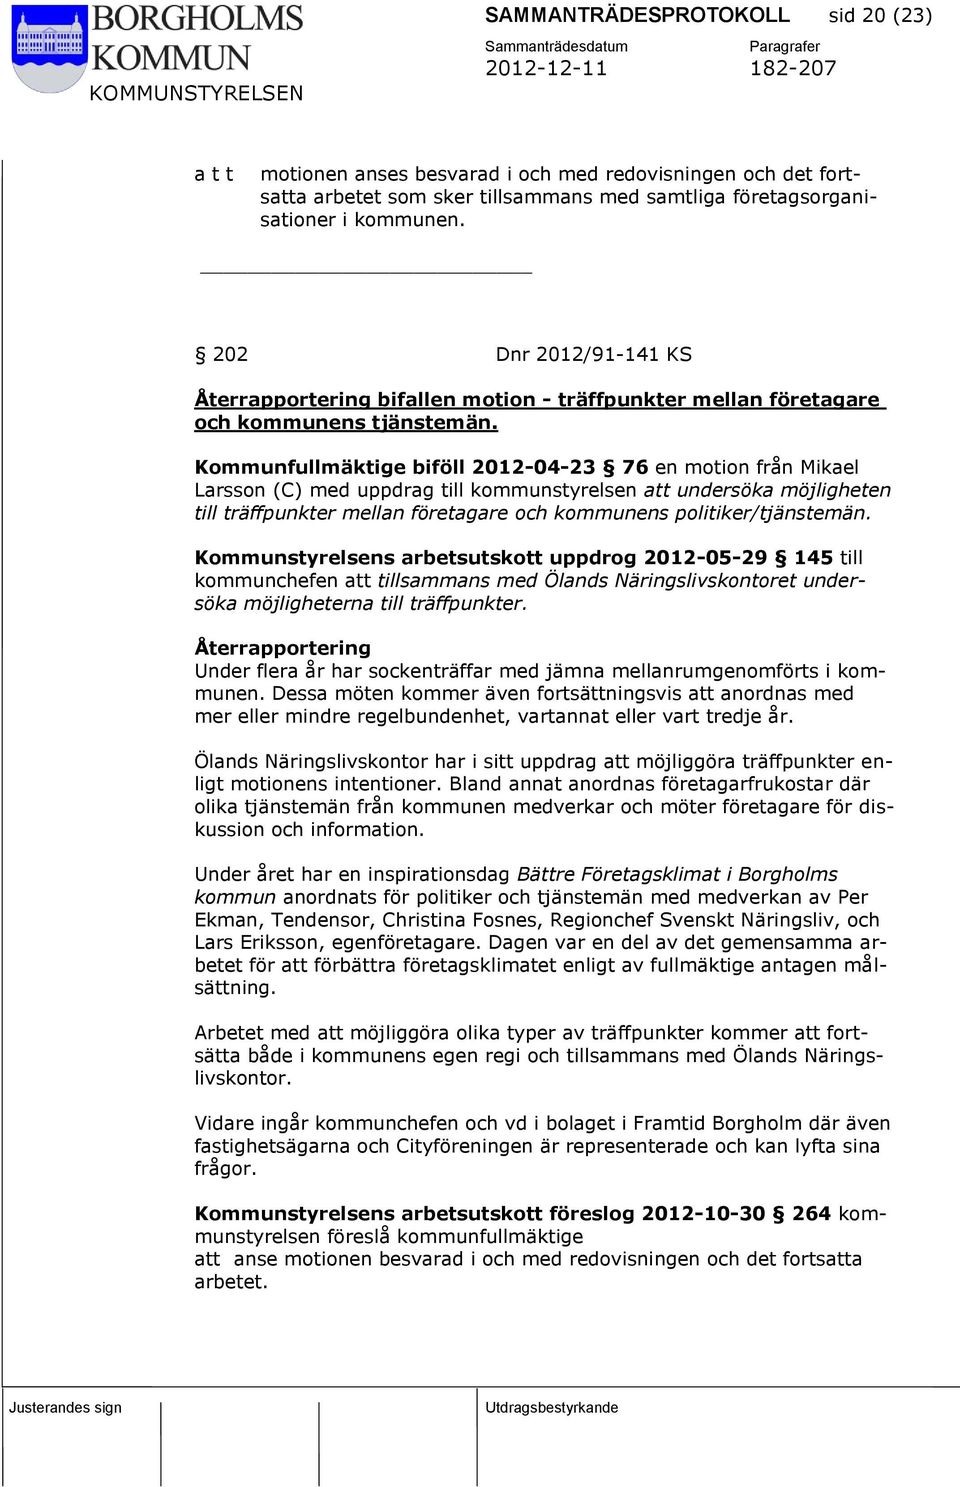 Kommunfullmäktige biföll 2012-04-23 76 en motion från Mikael Larsson (C) med uppdrag till kommunstyrelsen att undersöka möjligheten till träffpunkter mellan företagare och kommunens